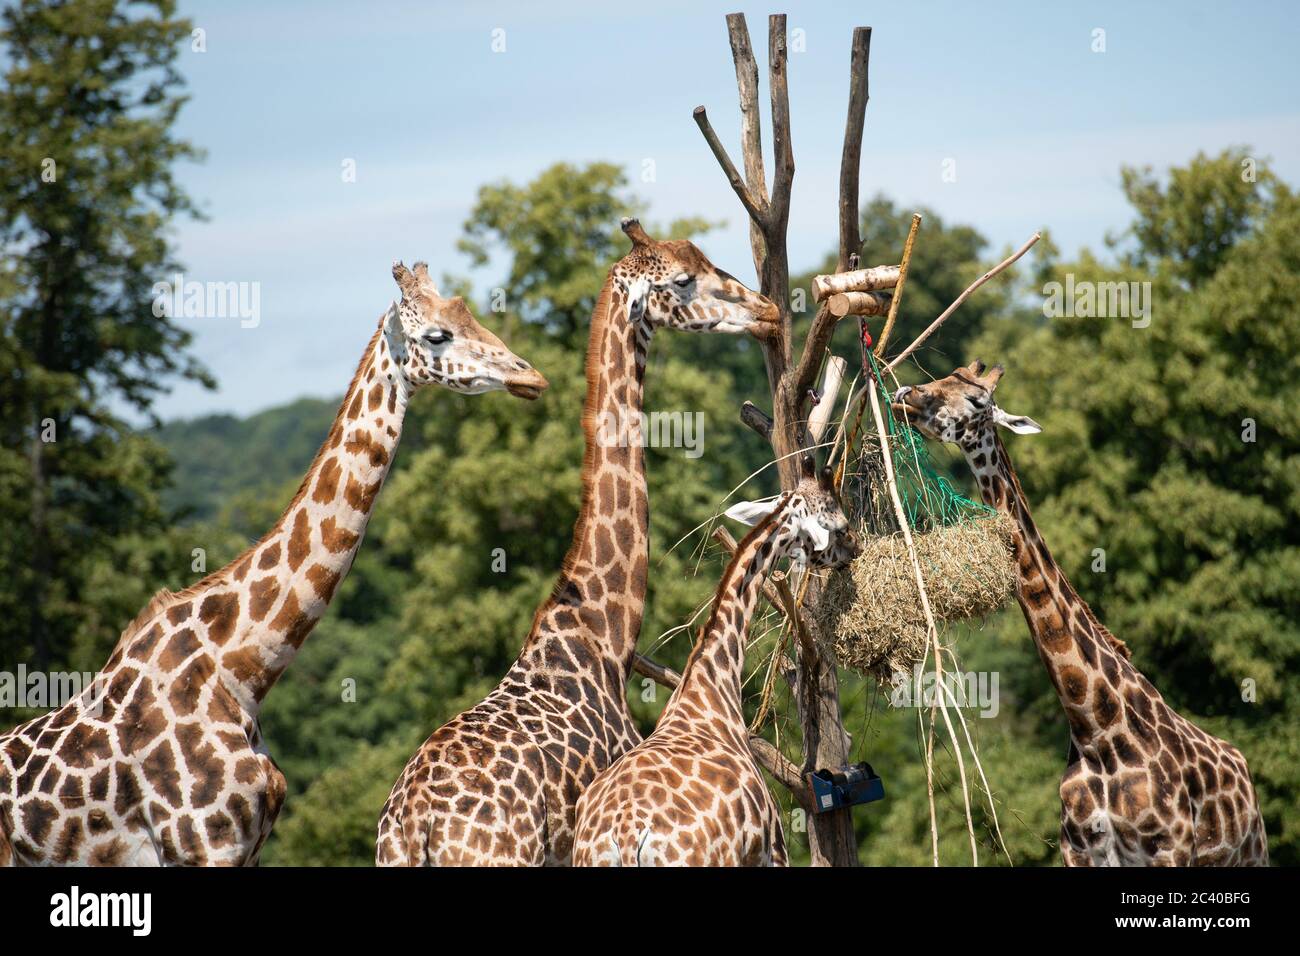 Besucher beobachten Giraffen im West Midlands Safari Park in Bewdley, da Großbritannien für eine Juni-Hitzewelle gerüstet ist, da die Temperaturen in dieser Woche bis in die Mitte der 30er Jahre steigen werden. Stockfoto